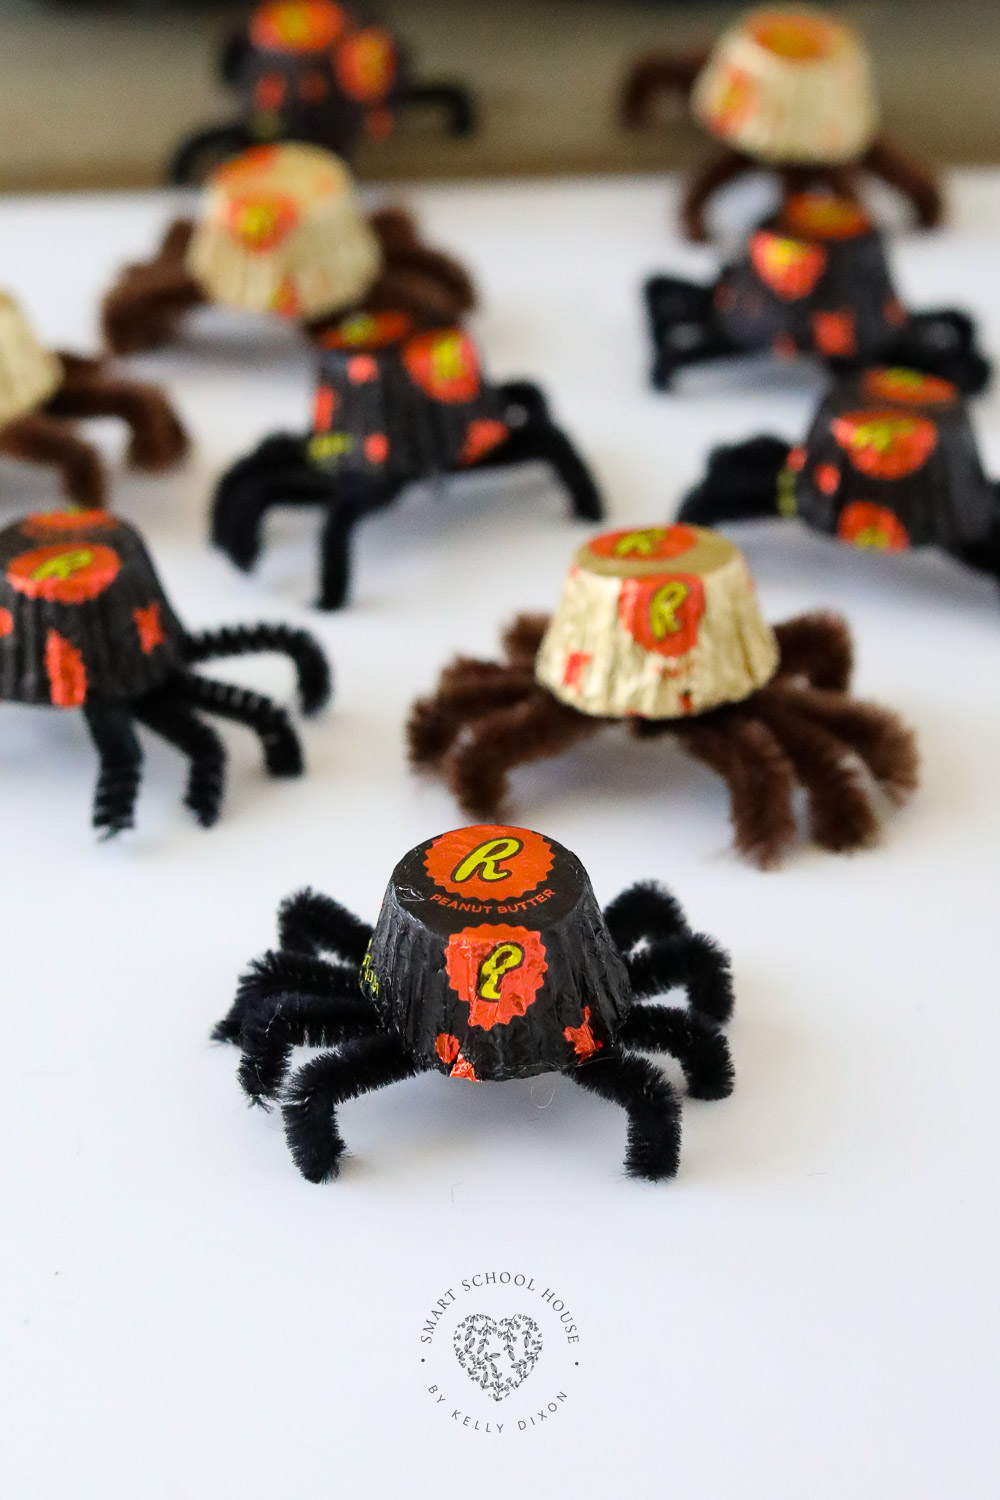 Les araignées au beurre de cacahuète sont une idée d'artisanat d'Halloween mignonne et facile qui fera sourire tout le monde !  Ces araignées effrayantes sont faciles à fabriquer et à partager avec des amis en octobre.